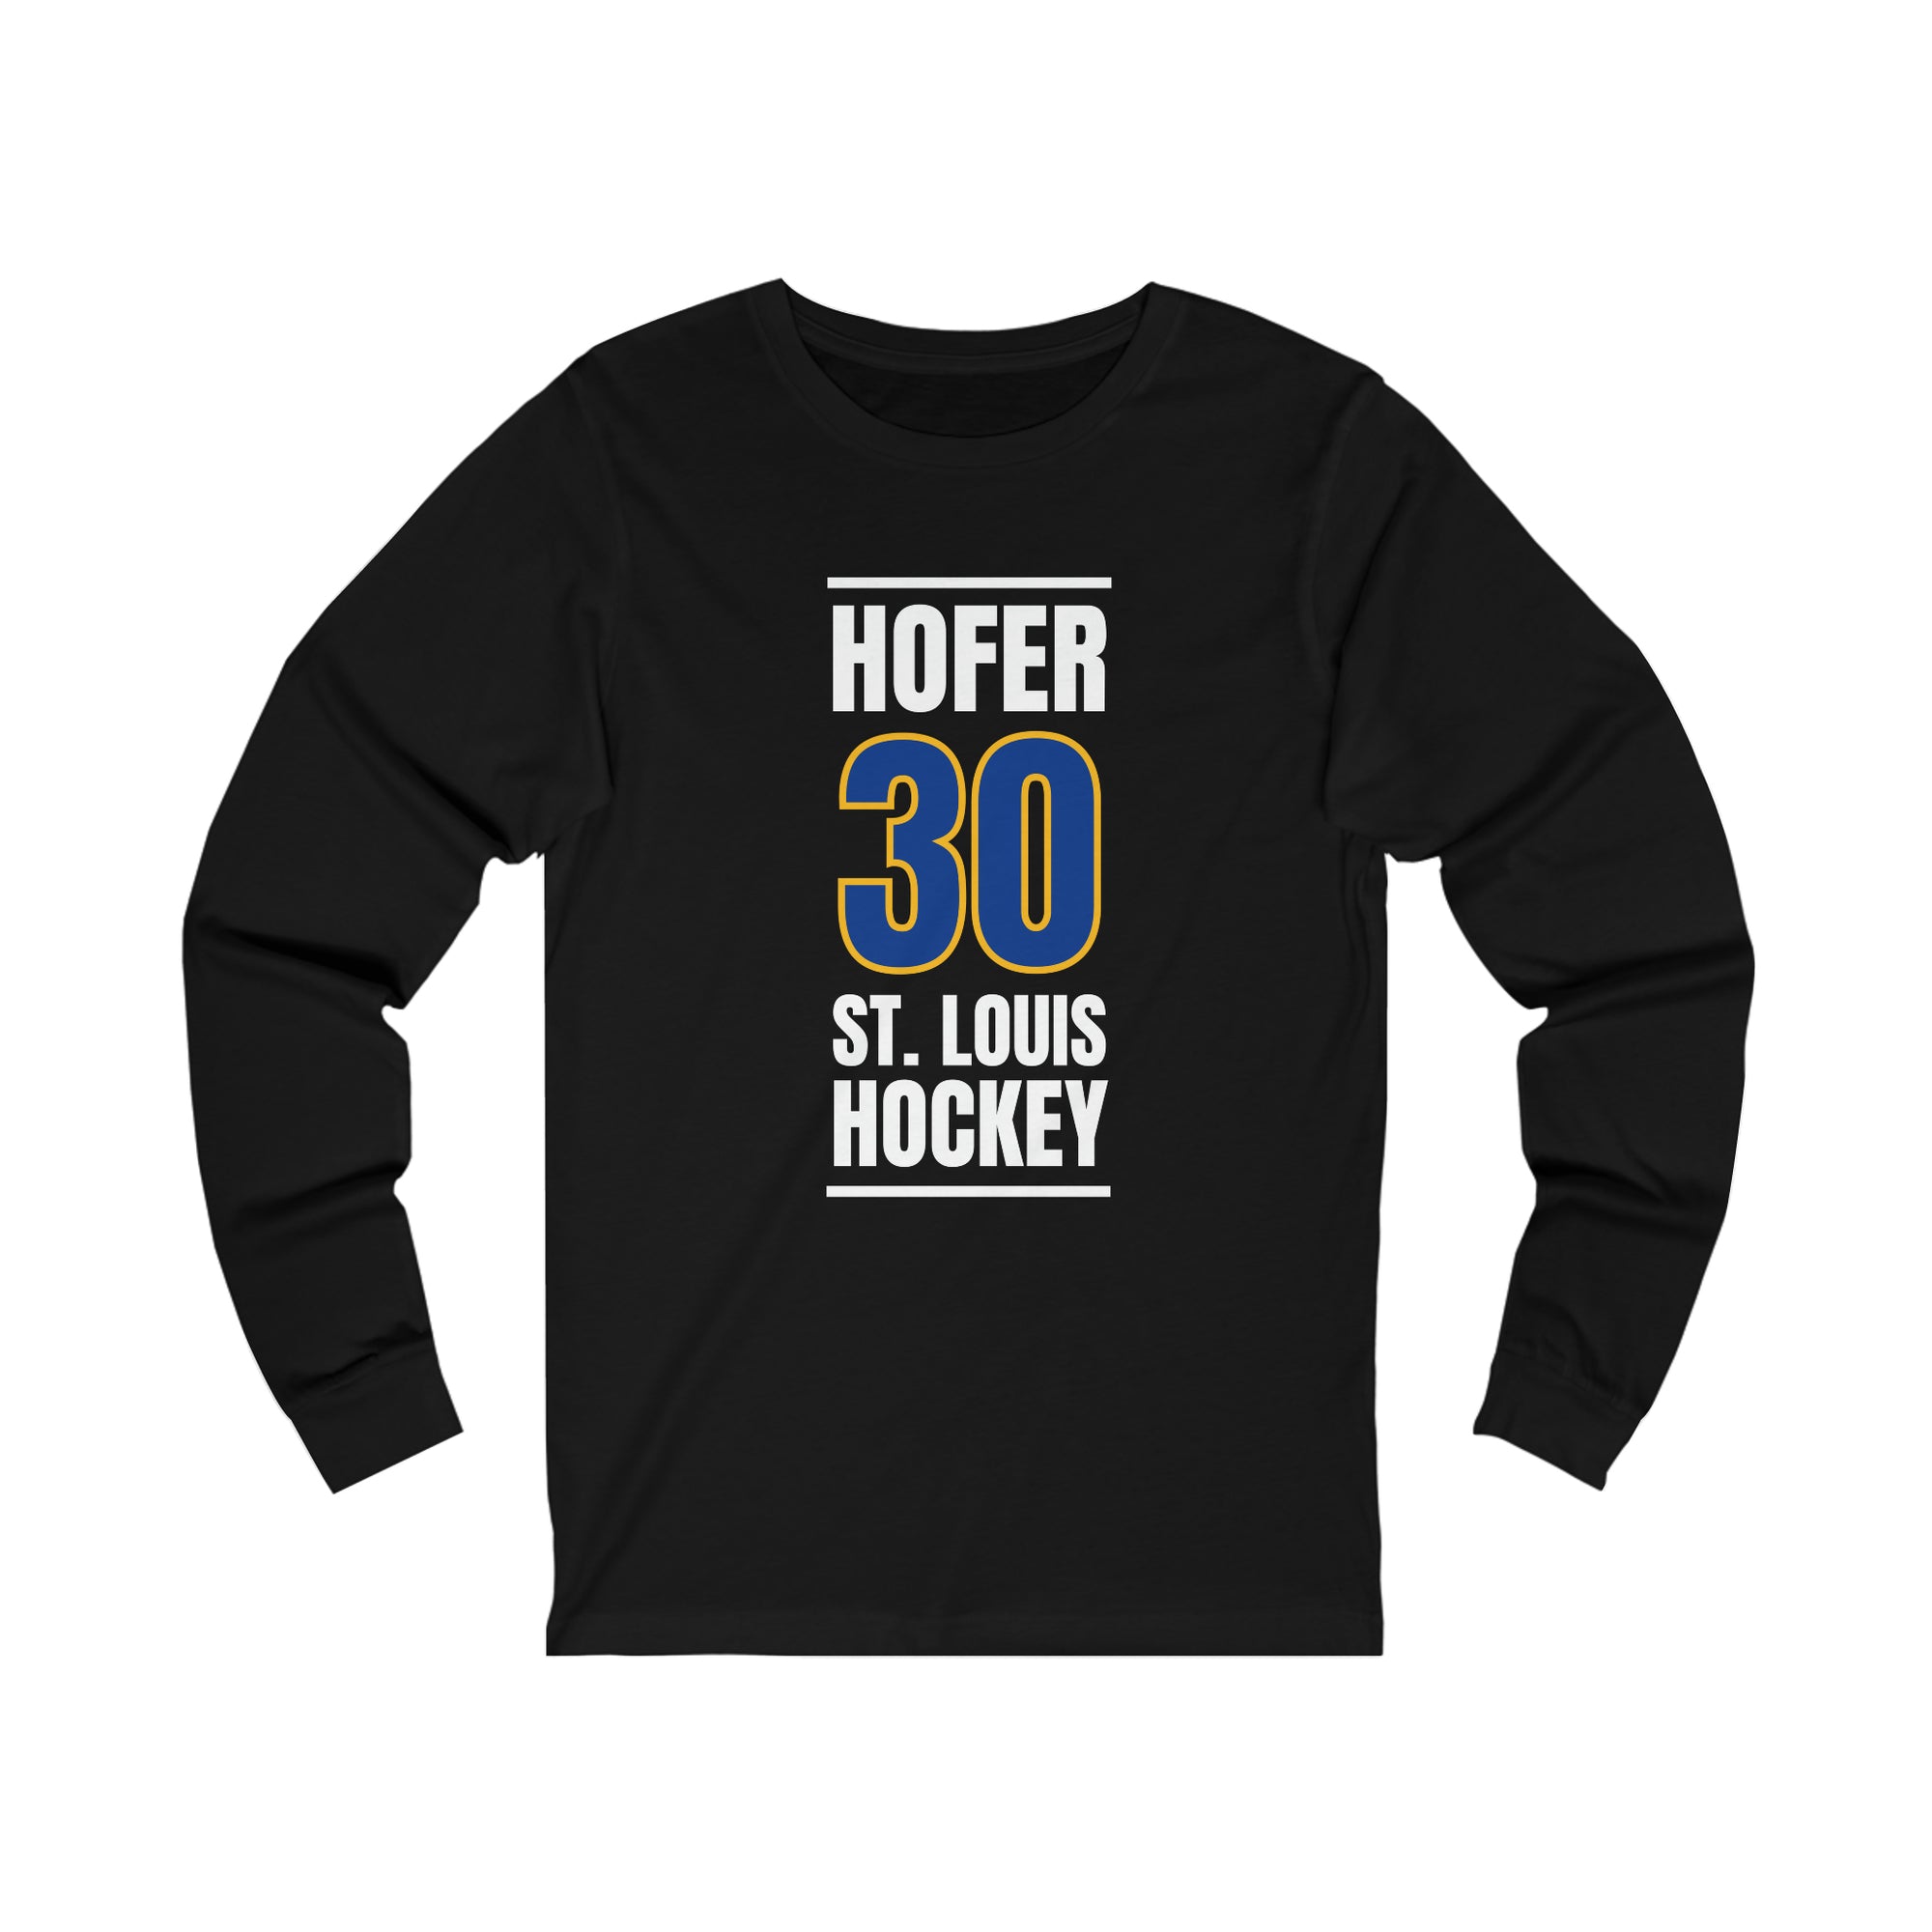 Hofer 30 St. Louis Hockey Blue Vertical Design Unisex Jersey Long Sleeve Shirt